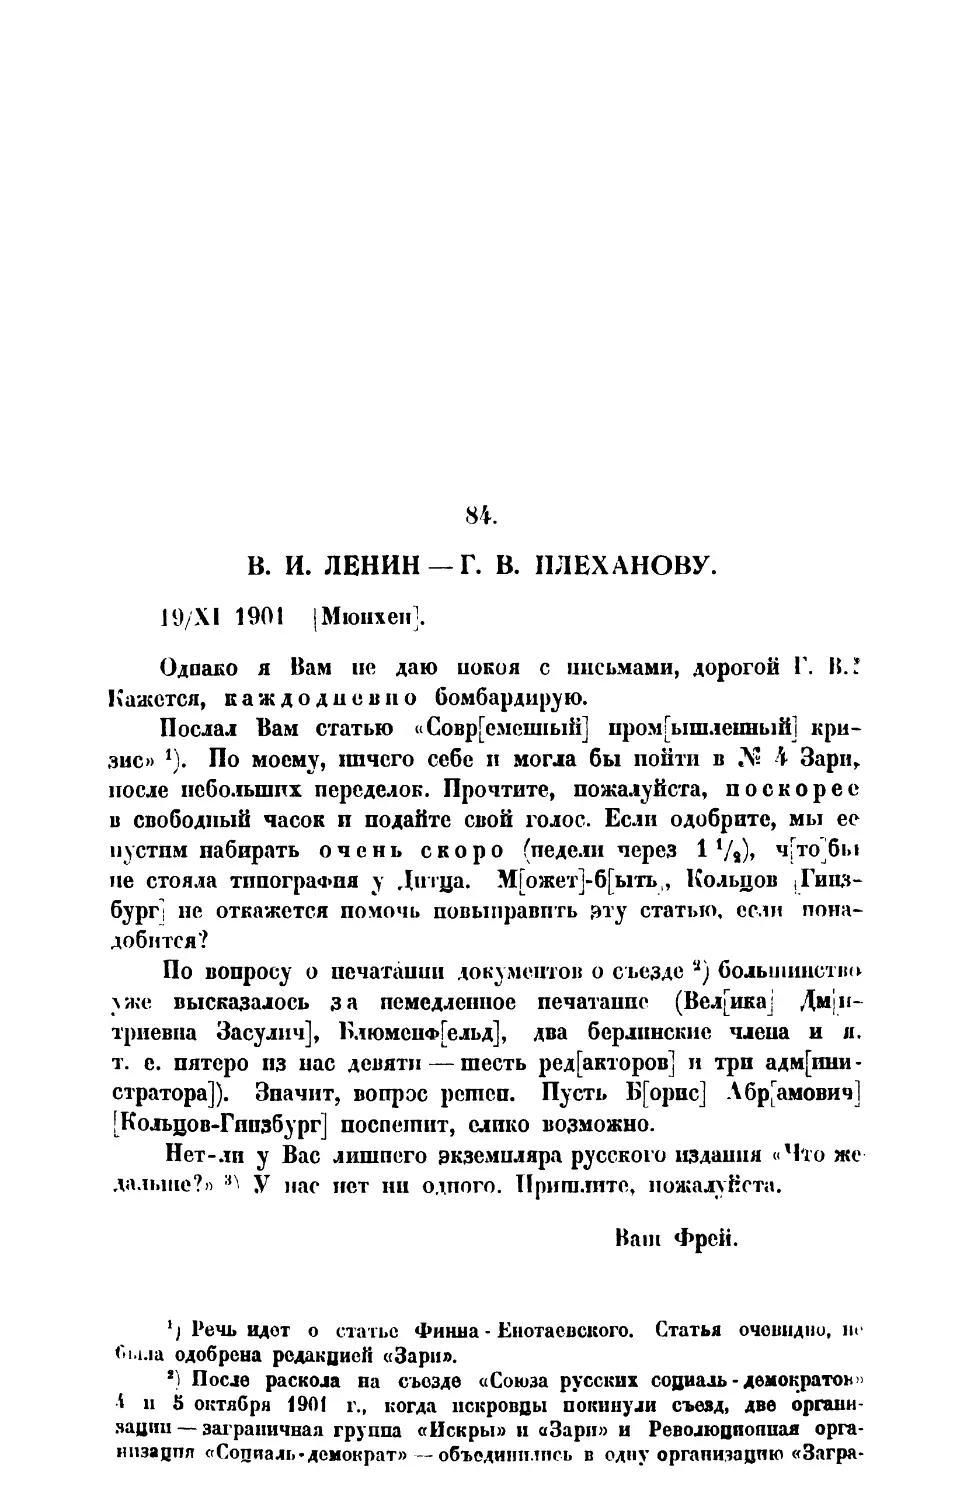 84. В. И. Ленин. — Письмо Г. В. Плеханову от 19 XI 1901 г.